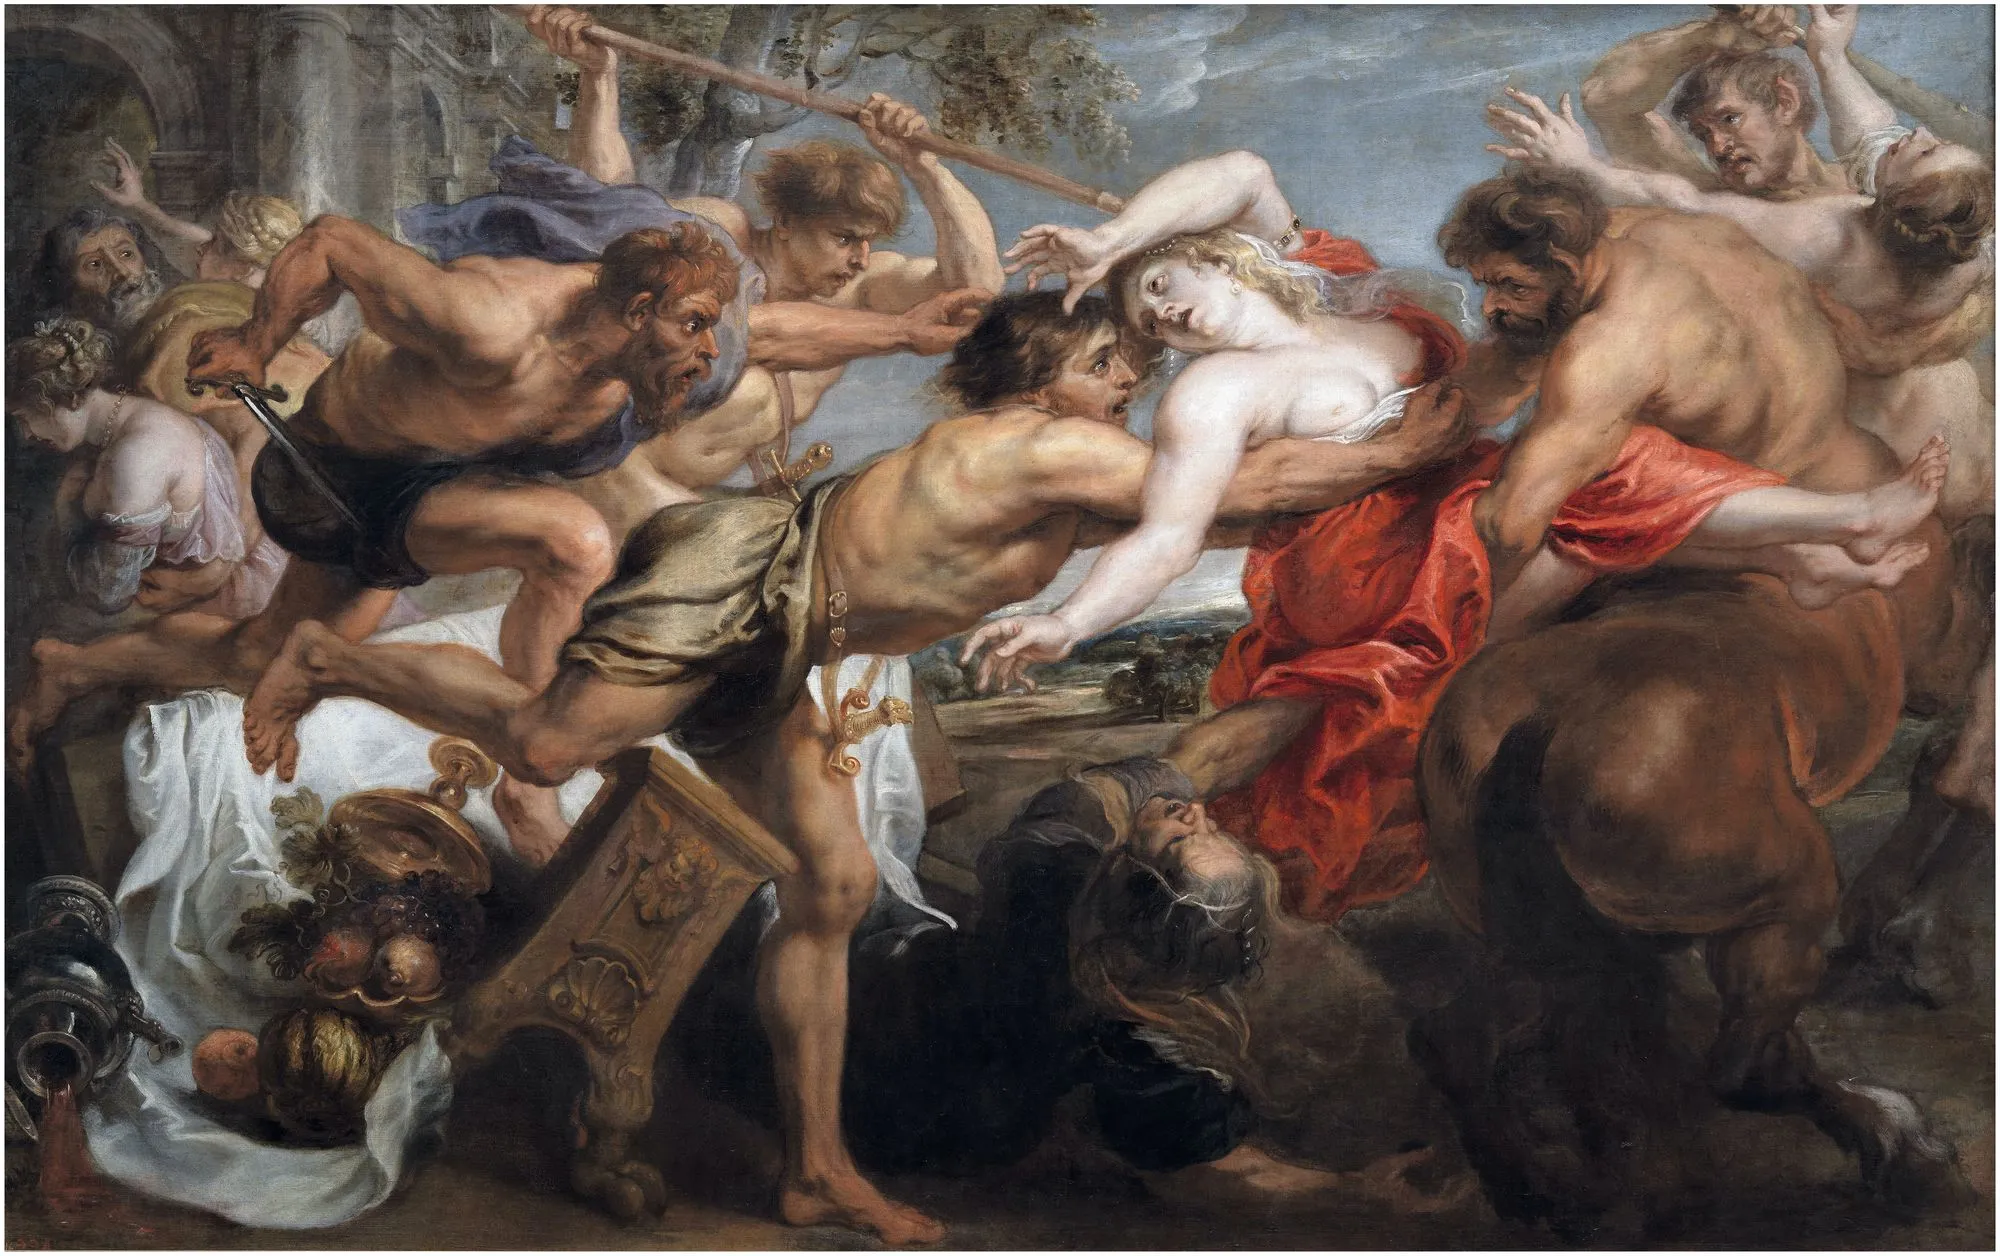 Pedro Pablo Rubens, El rapto de Hipodamía, 1636-1637, Museo del Prado